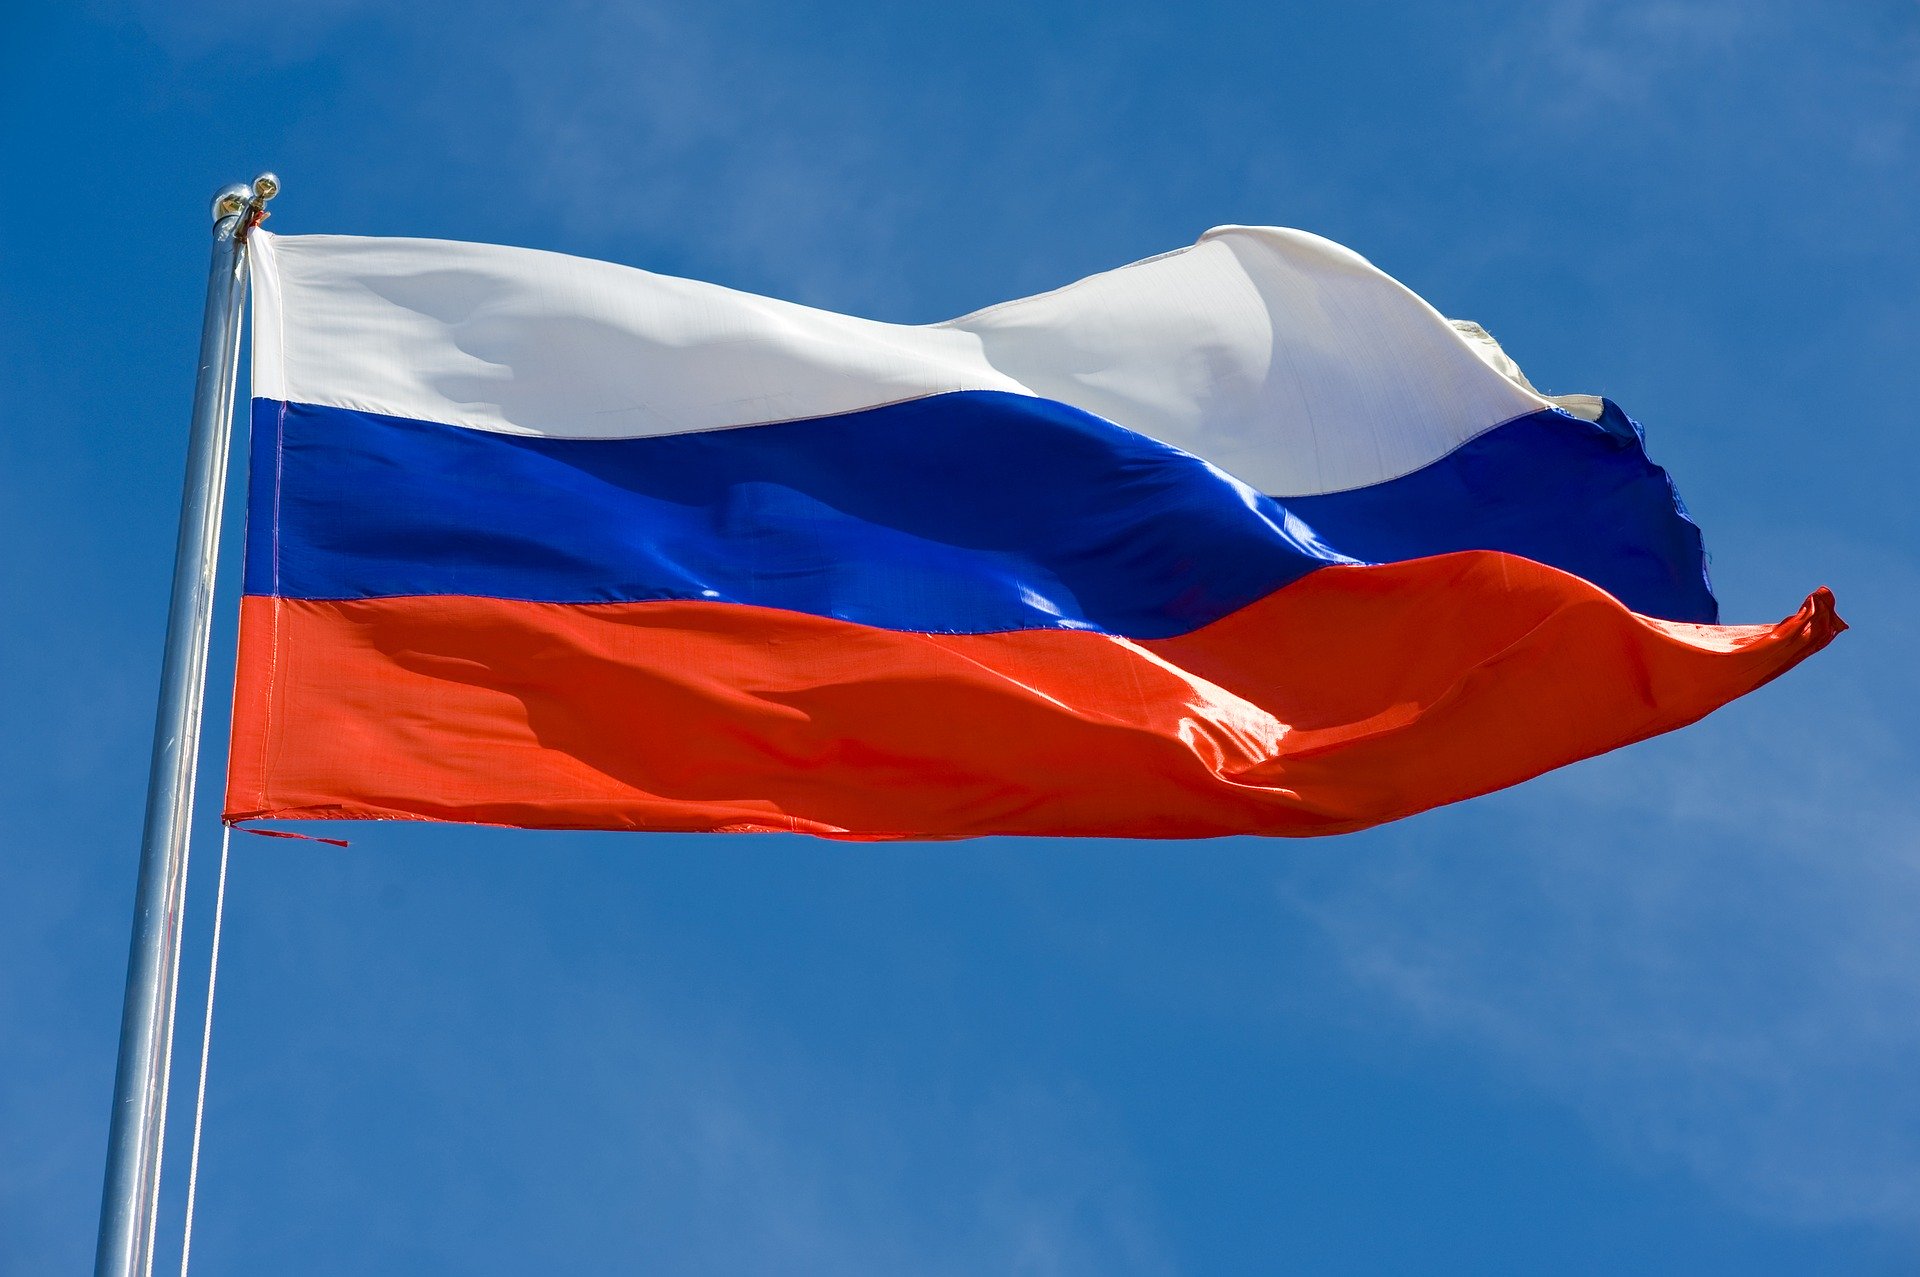 В Госдуму внесен законопроект об исполнении гимна России на всех спортивных мероприятиях